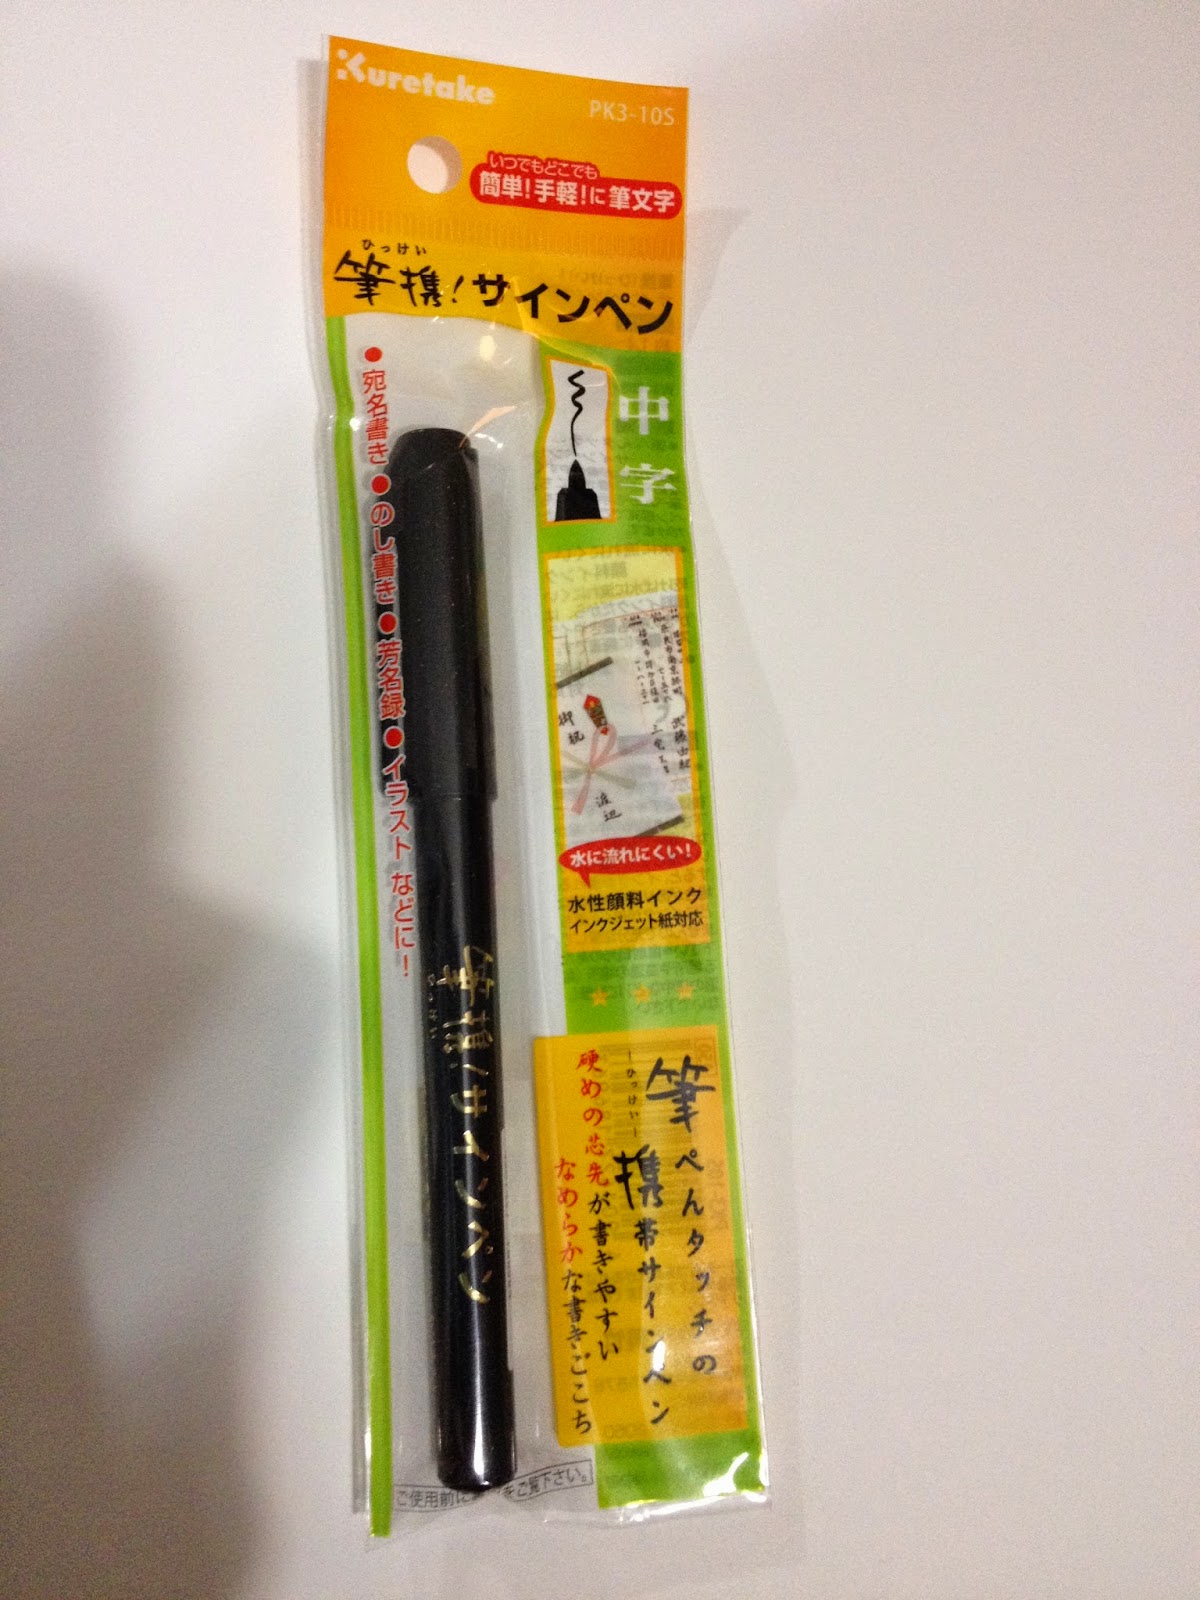 Kiki Water Pen White Refillable Water Brush Pen